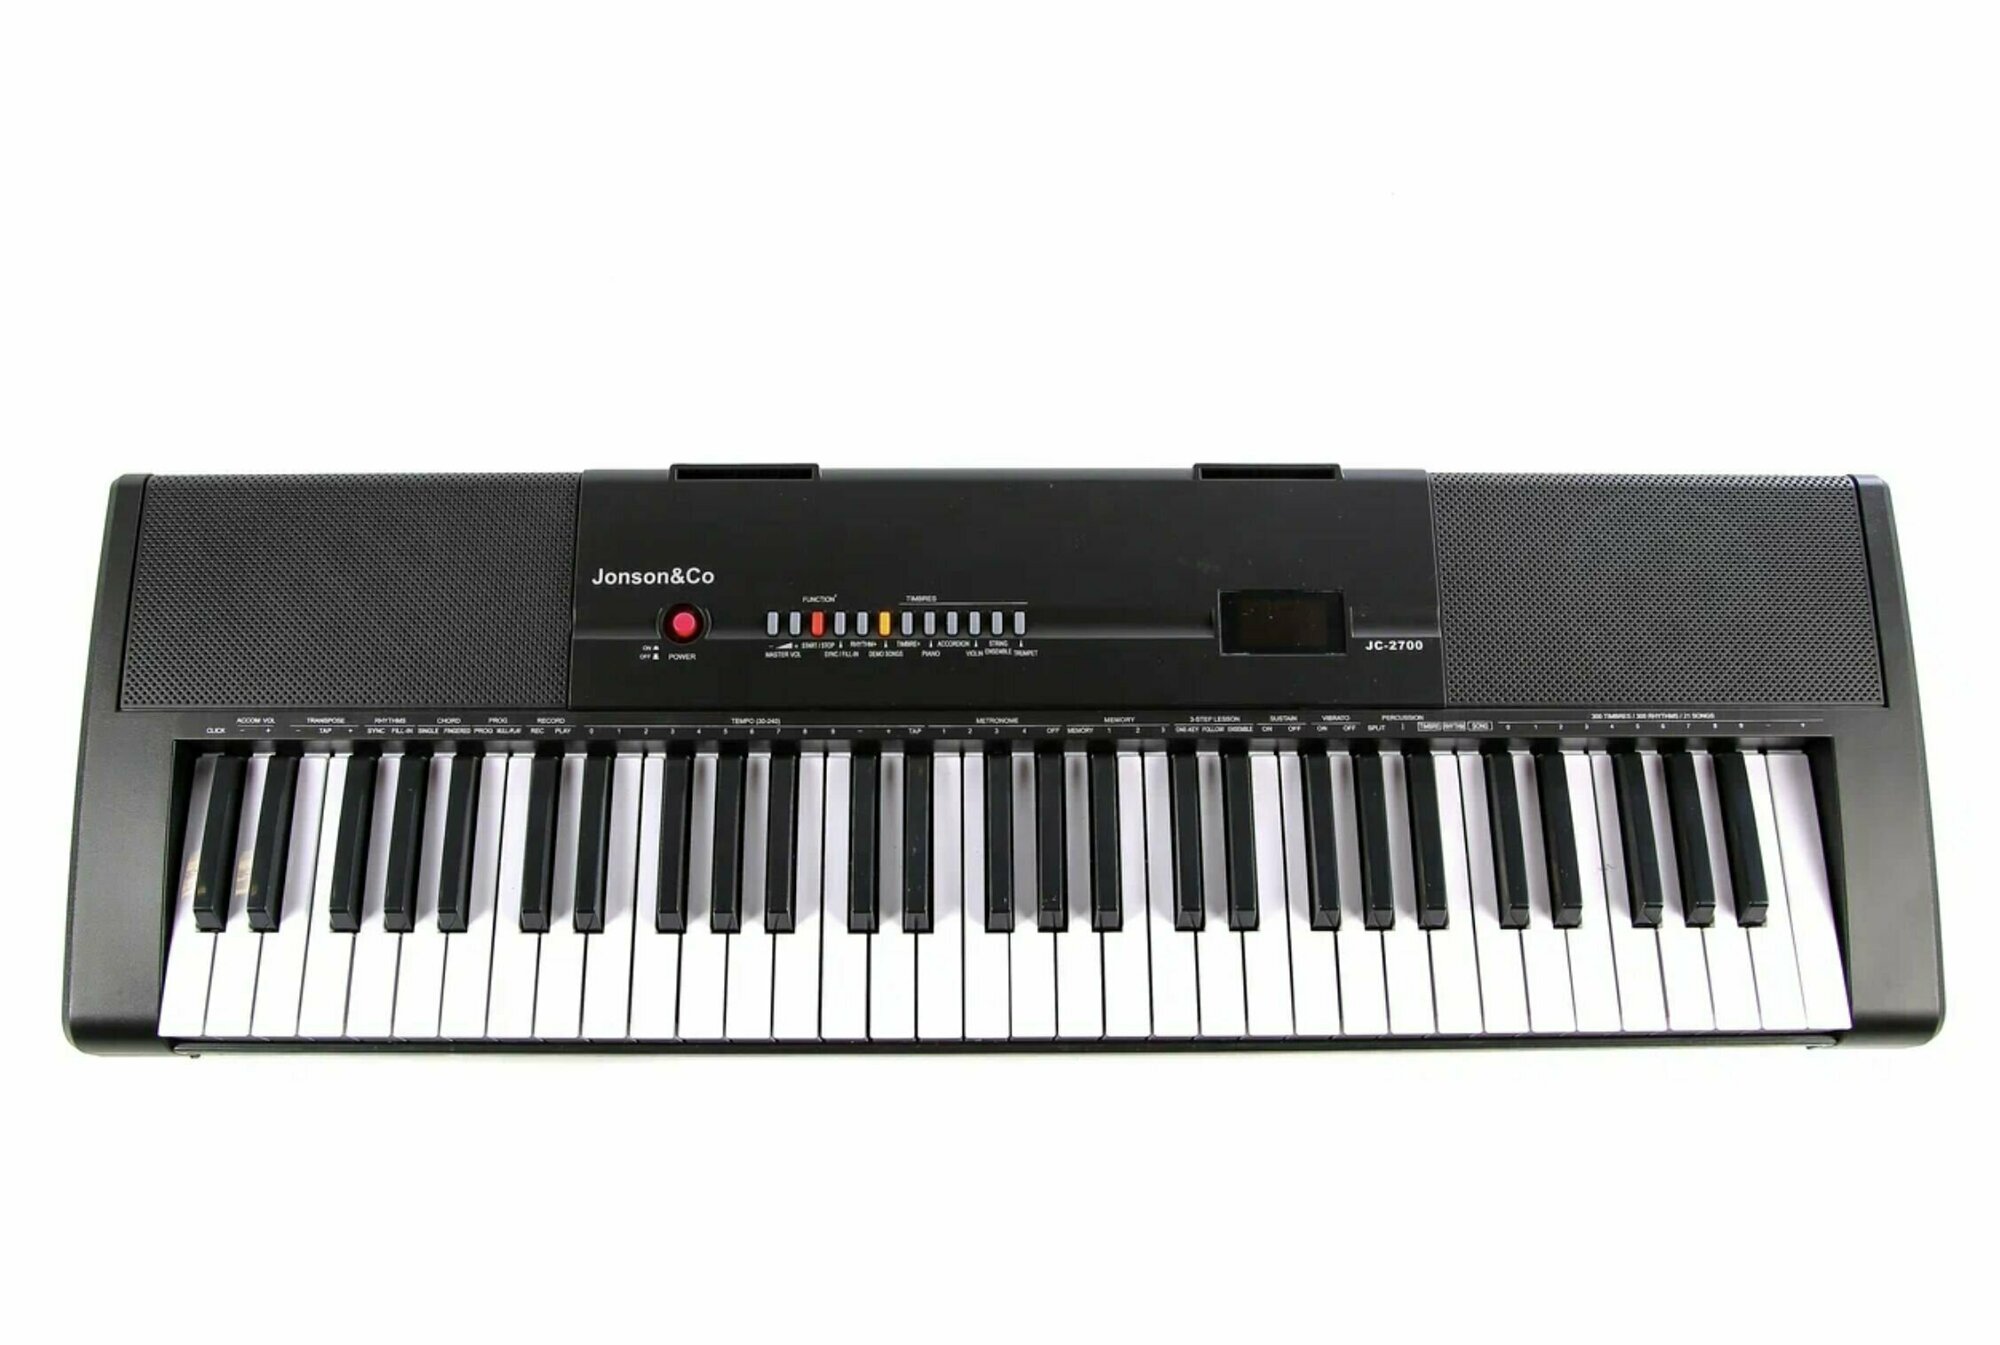 Синтезатор Jonson&Co JC-2100 (M) 61 клавиша